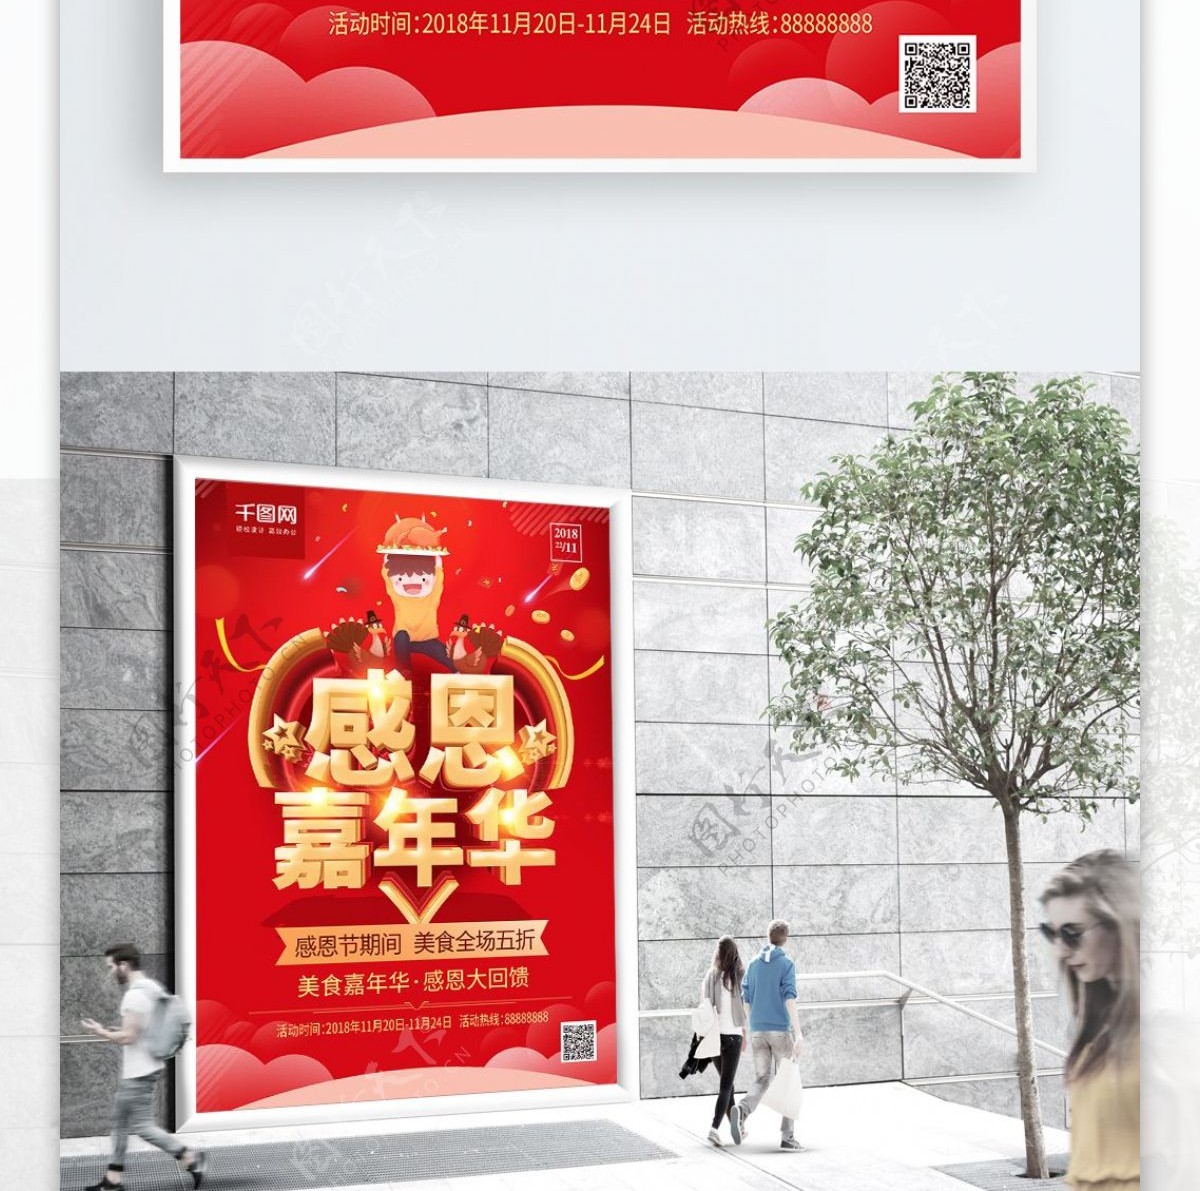 红色立体字感恩嘉年华感恩节美食促销海报